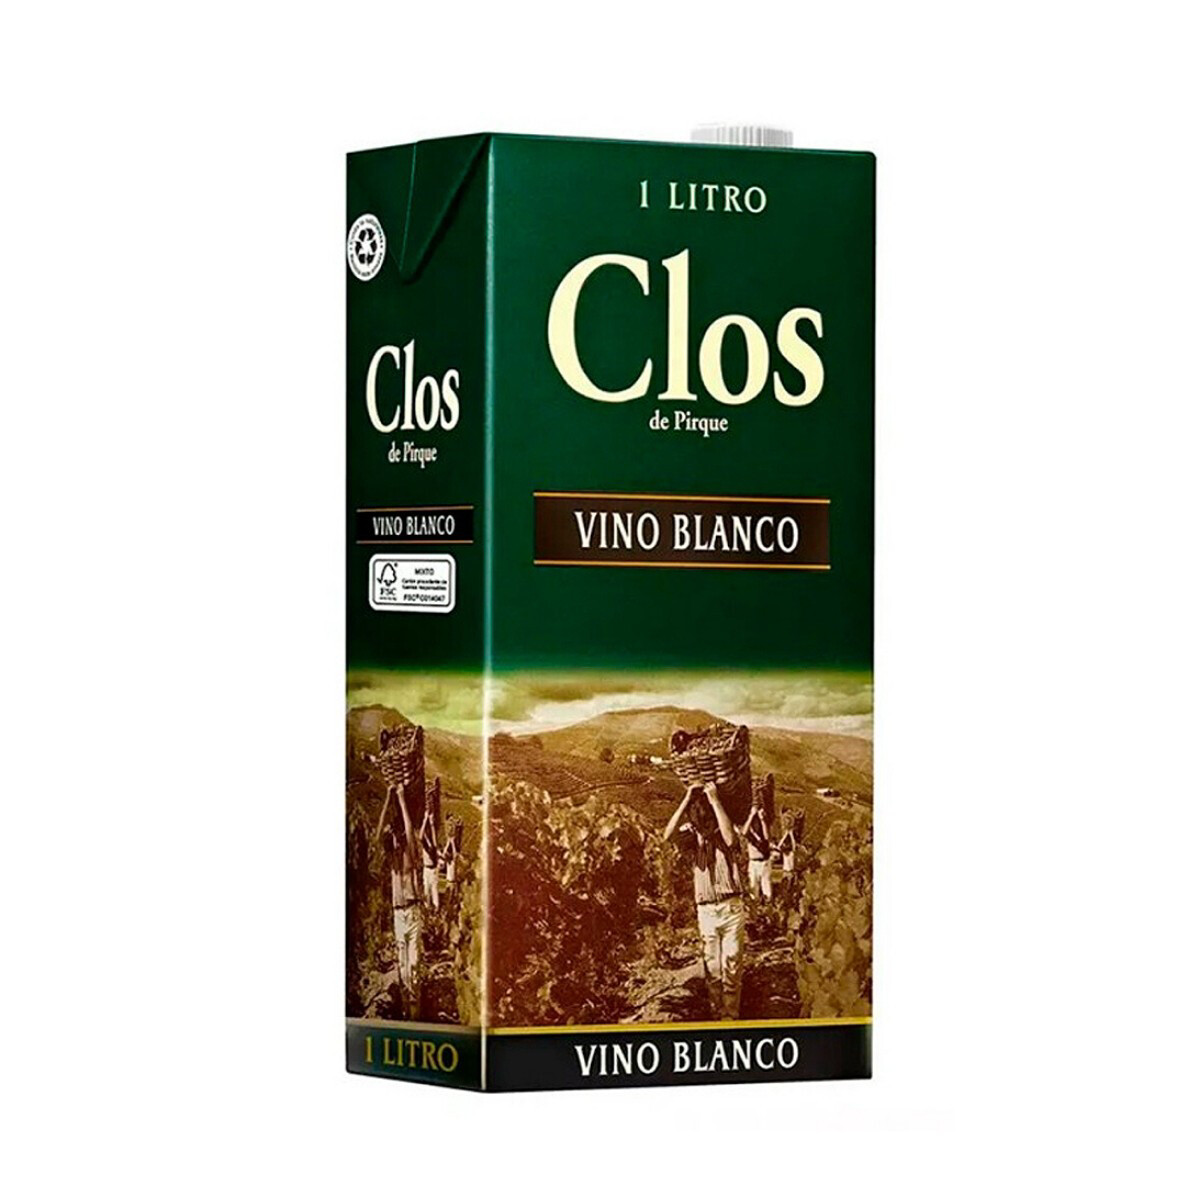 CLOS DE PIRQUE VINO BLANCO Alc. 12% Vol. 1L